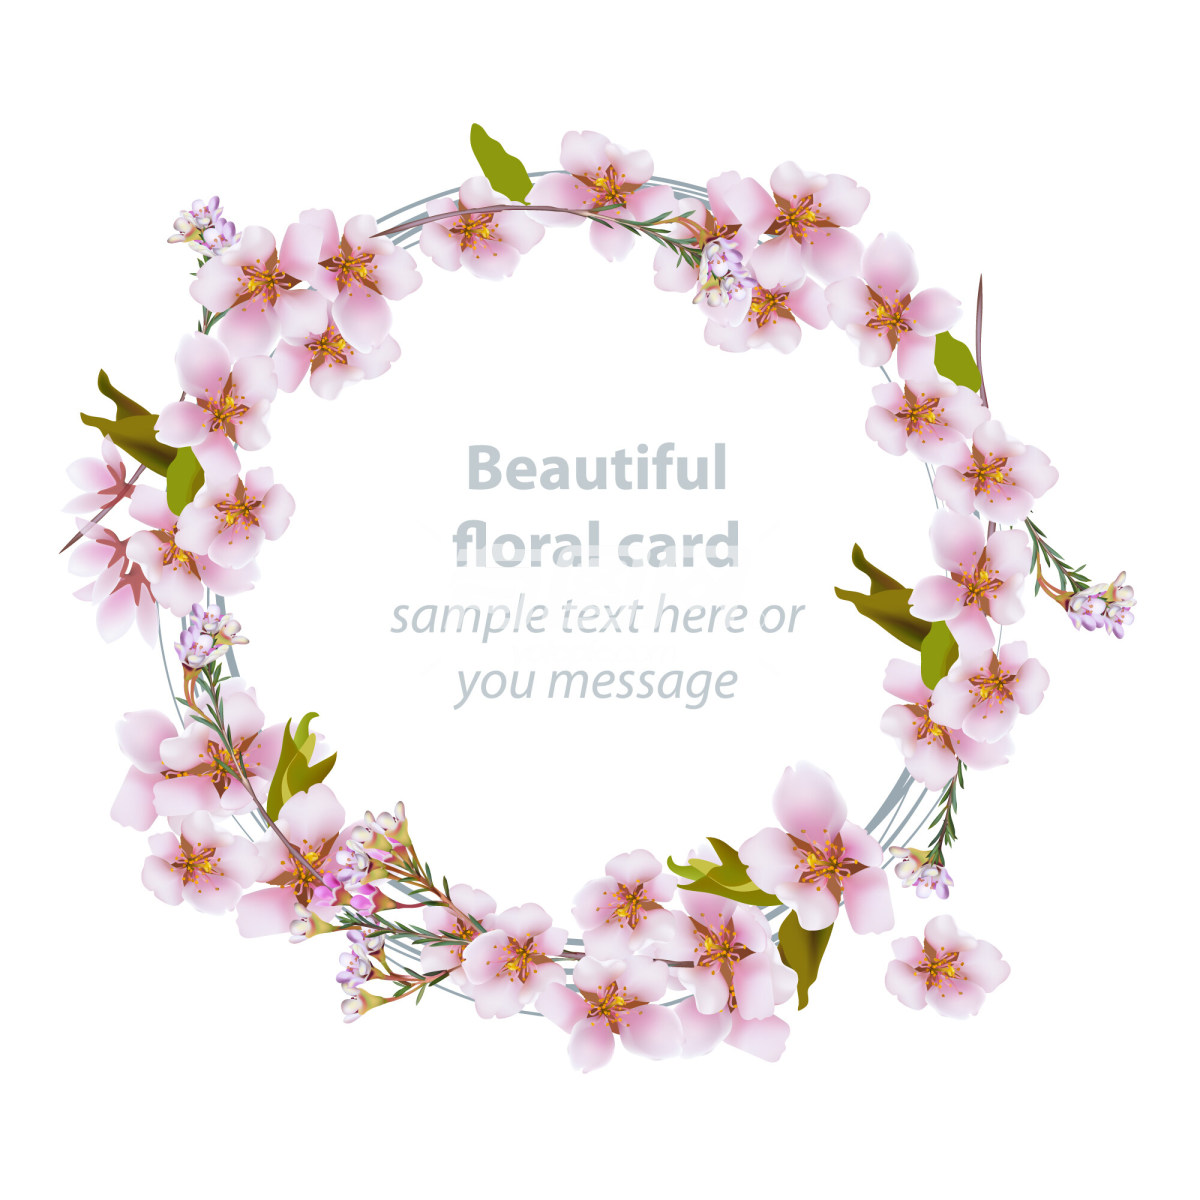 花卉主题装饰性卡片设计